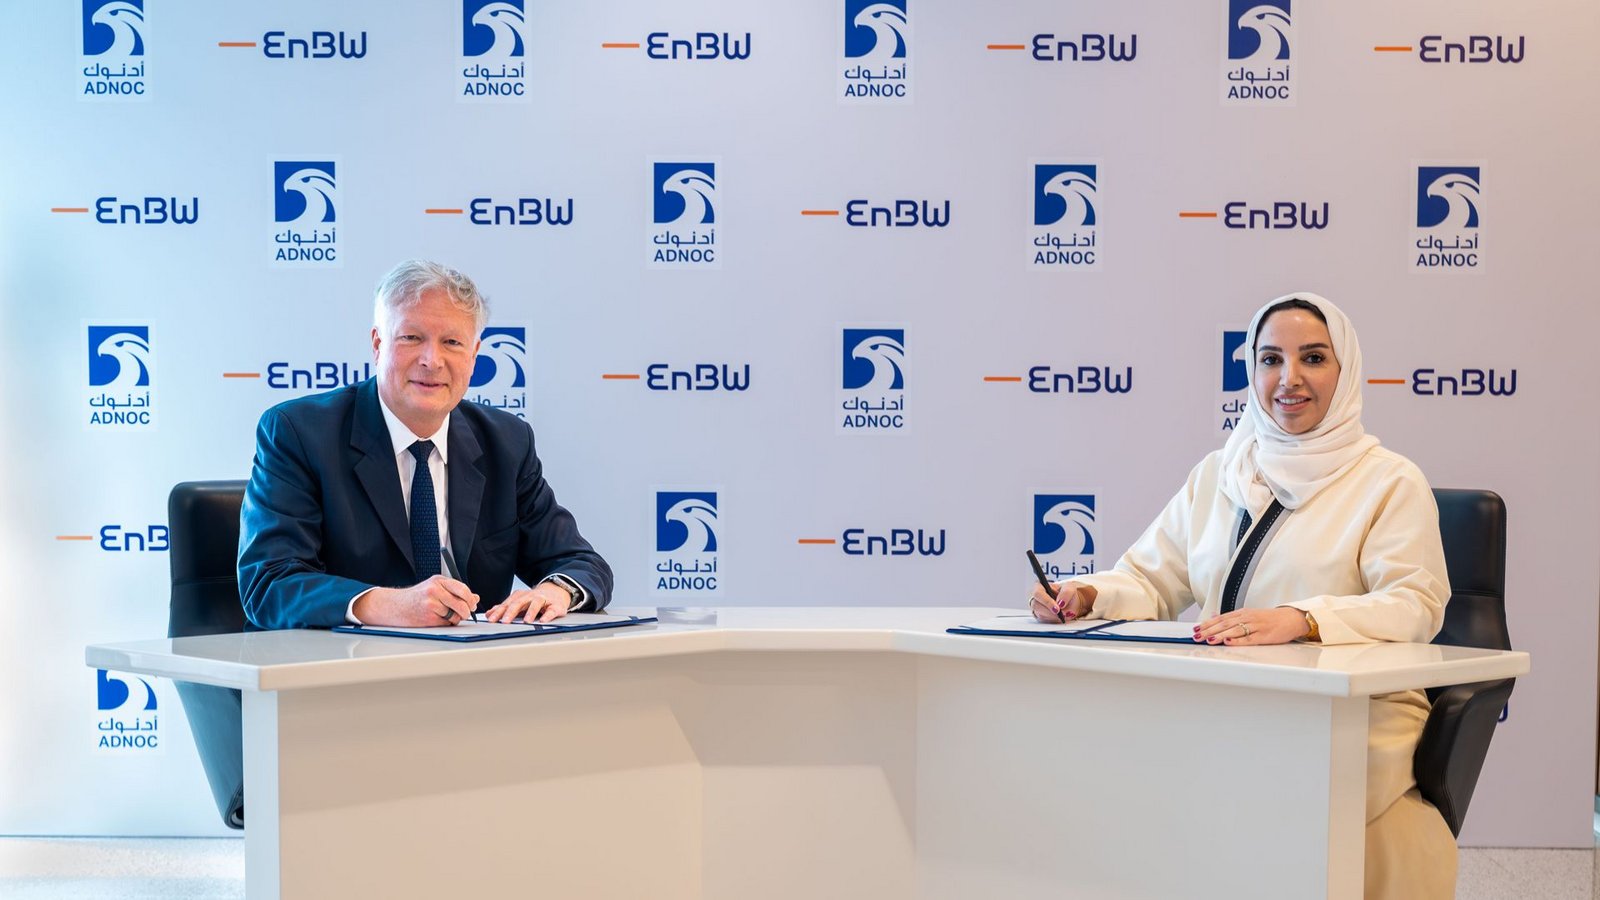 EnBW-Vorstand Peter Heydecker und  Adnoc-Managerin Fatema Al Nuaimi bei der Vertragsunterschrift.Foto: ADNOC/EnBW